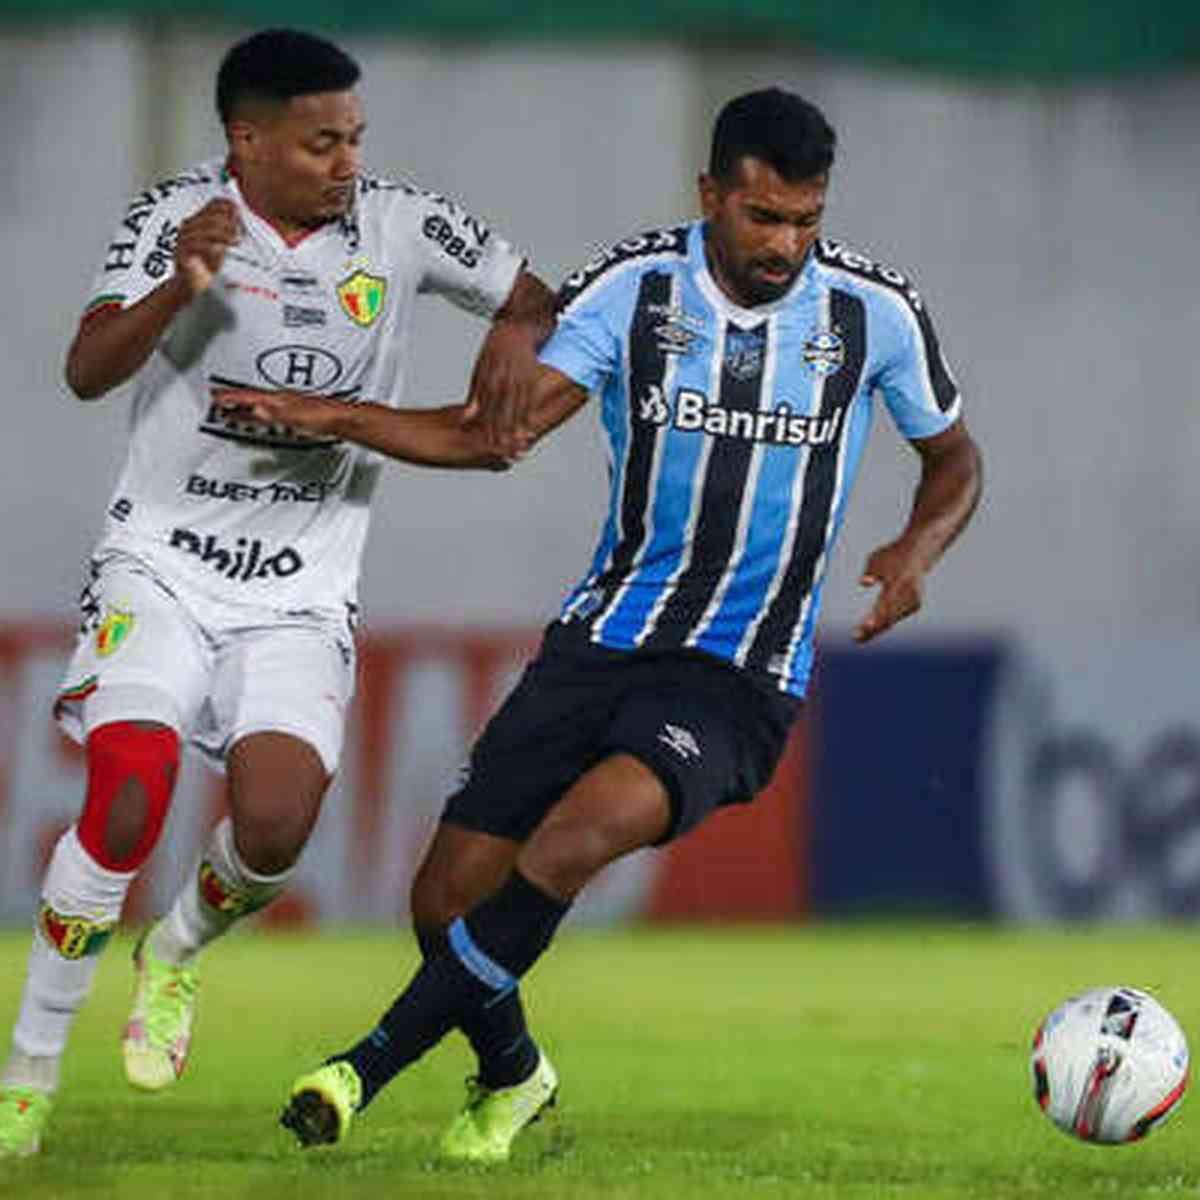 Ceará SC vs Tombense: A Clash of Titans